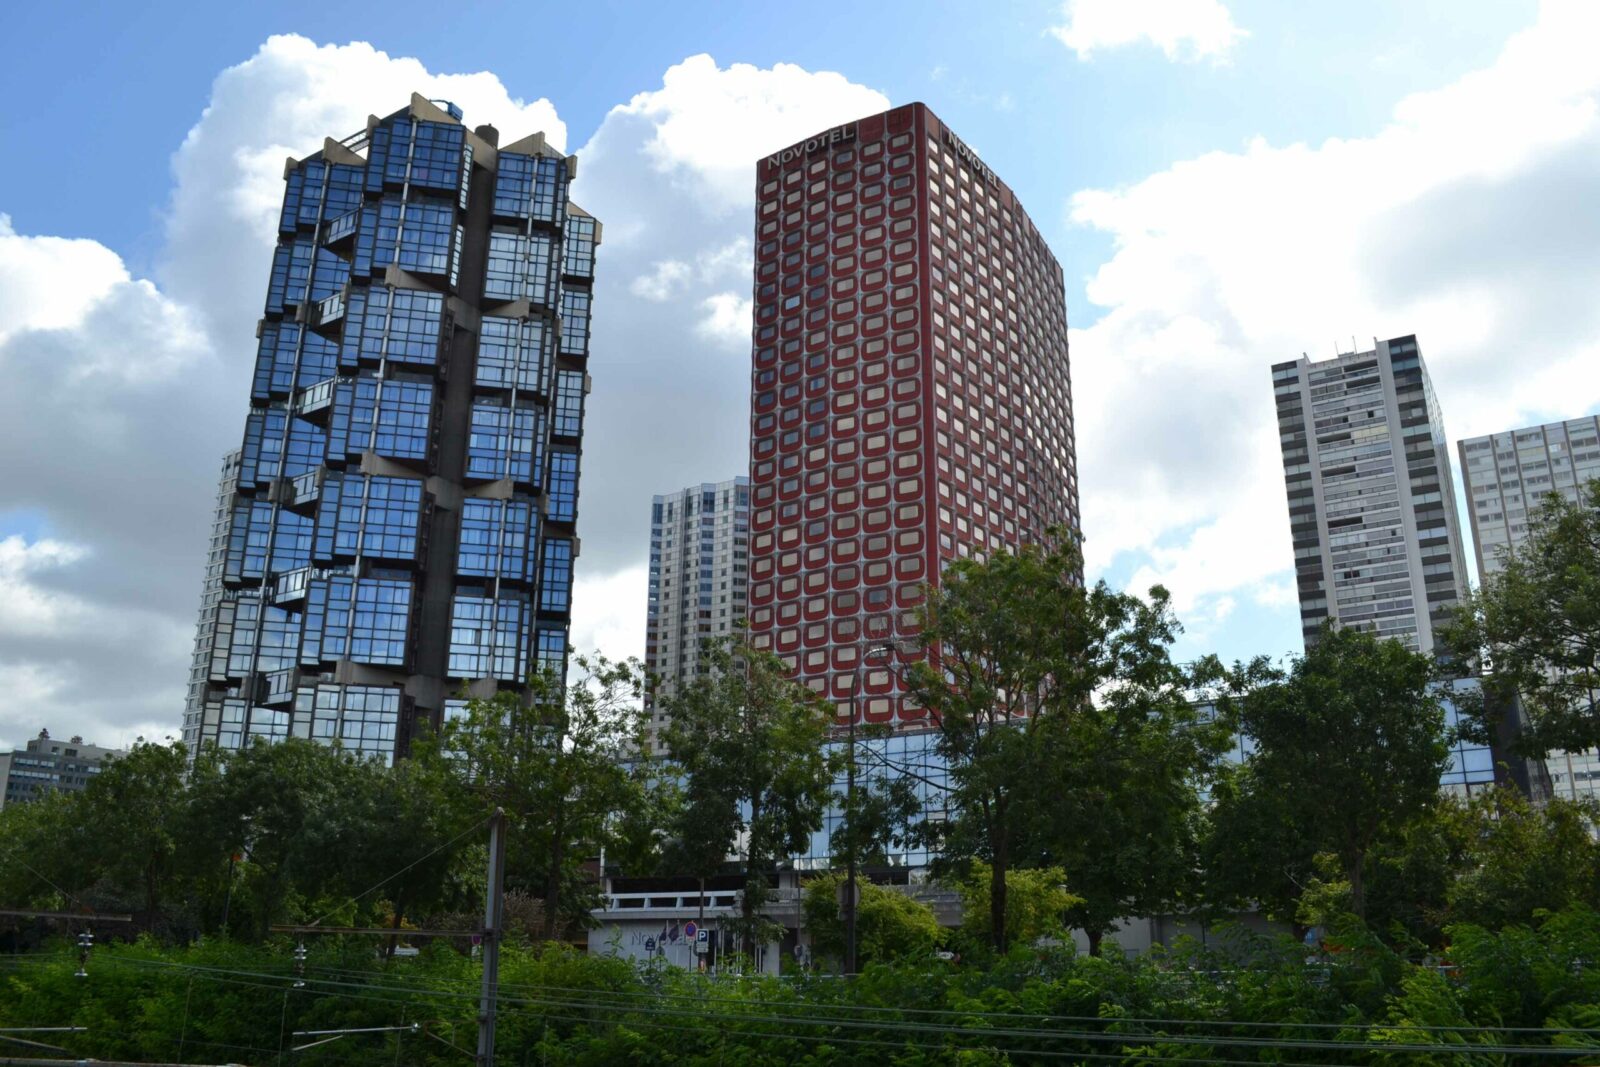 Skyline Paris Architektur hochhäuser blau und rote fassade, urbanismus Grand-Paris Frankreich Megastadt Stadtentwicklung